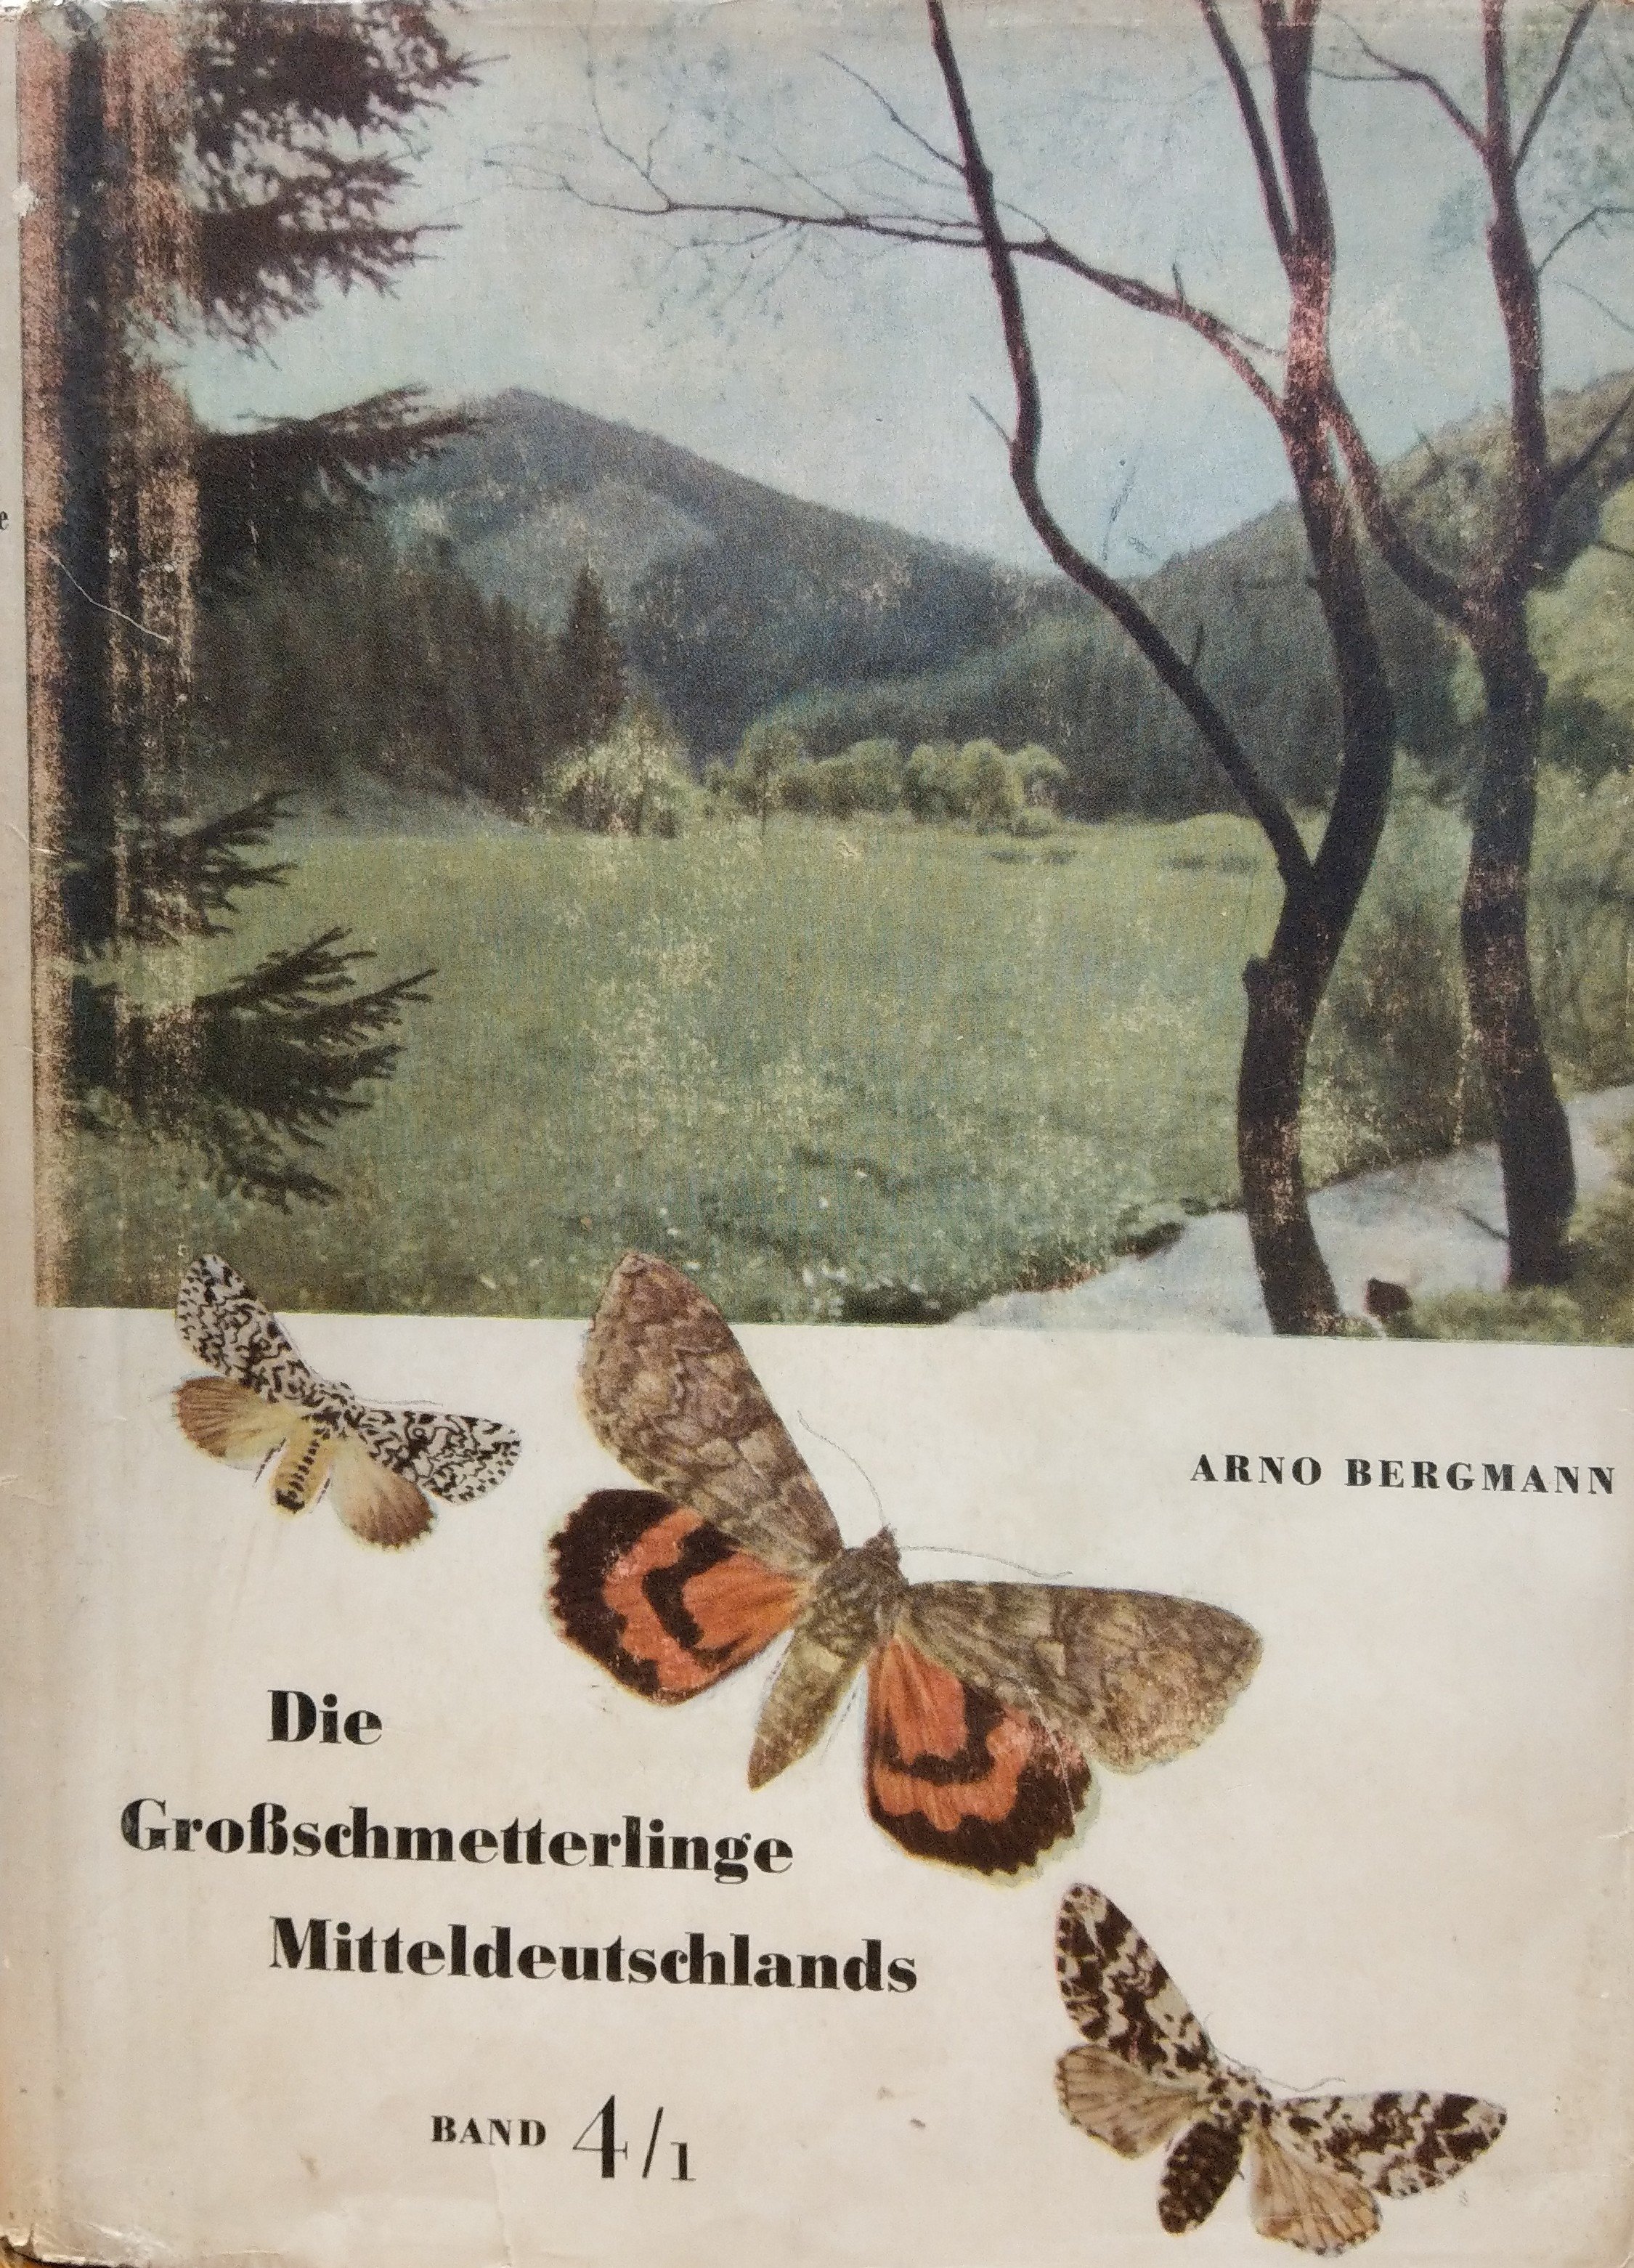 Arno Bergmann: Die Großschmetterlinge Mitteldeutschlands. Band 4/1. Eulen Verbreitung, Formen und Lebensgemeinschaften (Rippl-Rónai Múzeum CC BY-NC-ND)